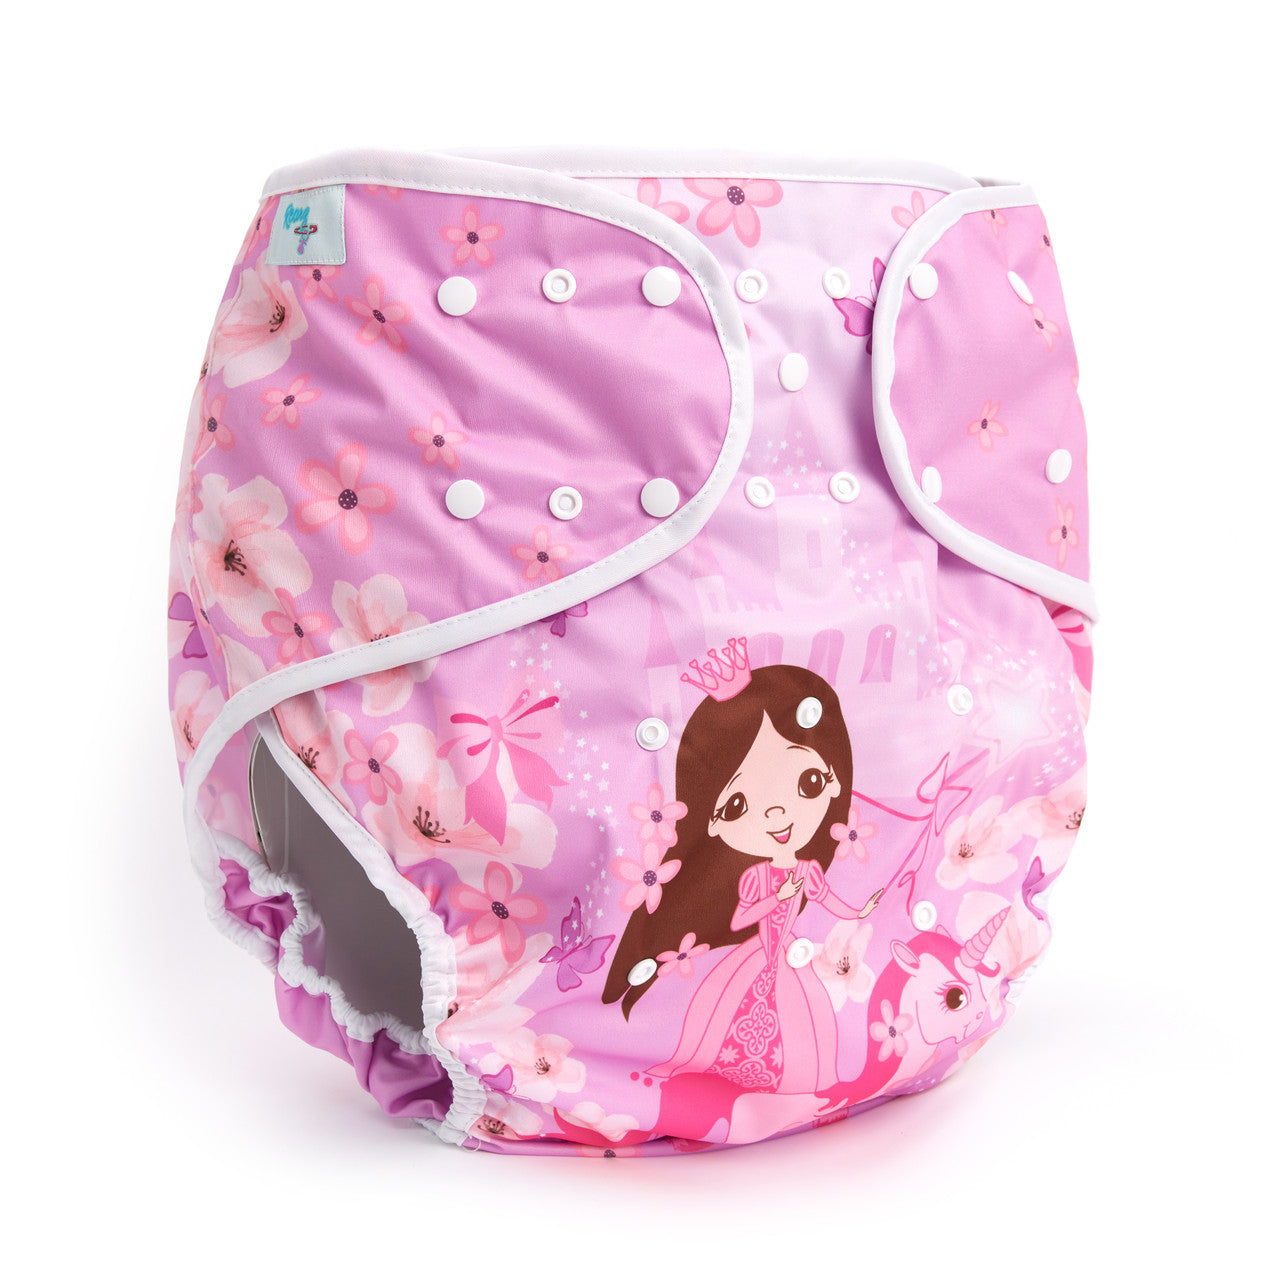 Rearz - Adult Diaper Cover/Wrap - Blossom Princess